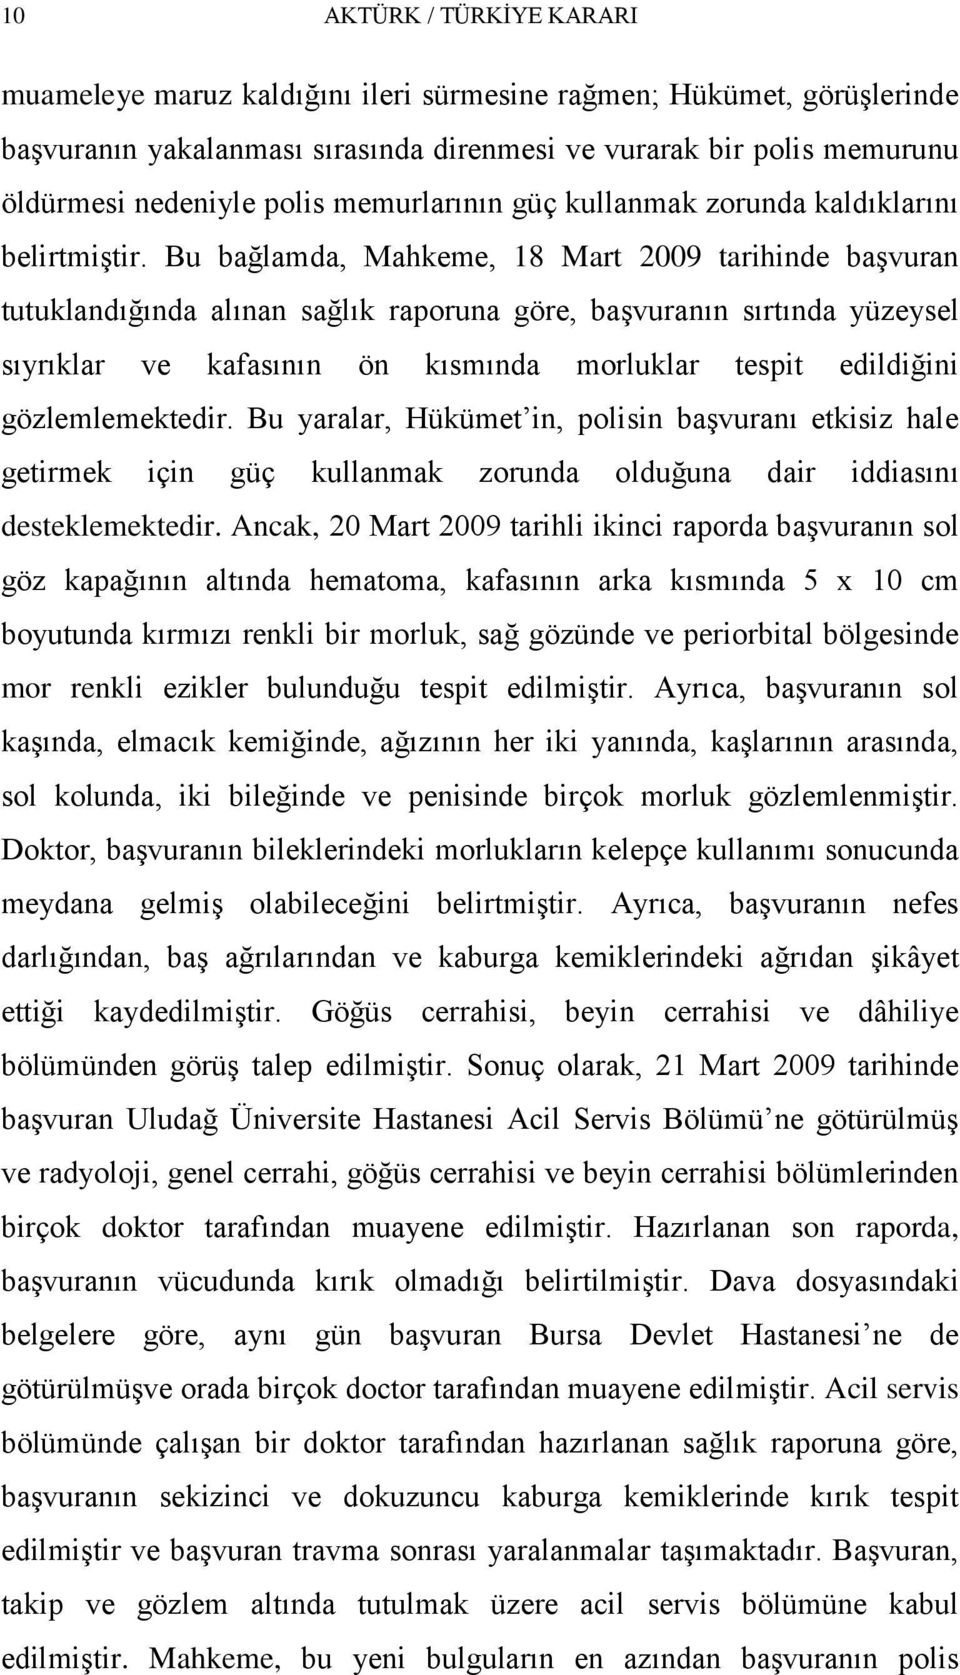 Bu bağlamda, Mahkeme, 18 Mart 2009 tarihinde baģvuran tutuklandığında alınan sağlık raporuna göre, baģvuranın sırtında yüzeysel sıyrıklar ve kafasının ön kısmında morluklar tespit edildiğini